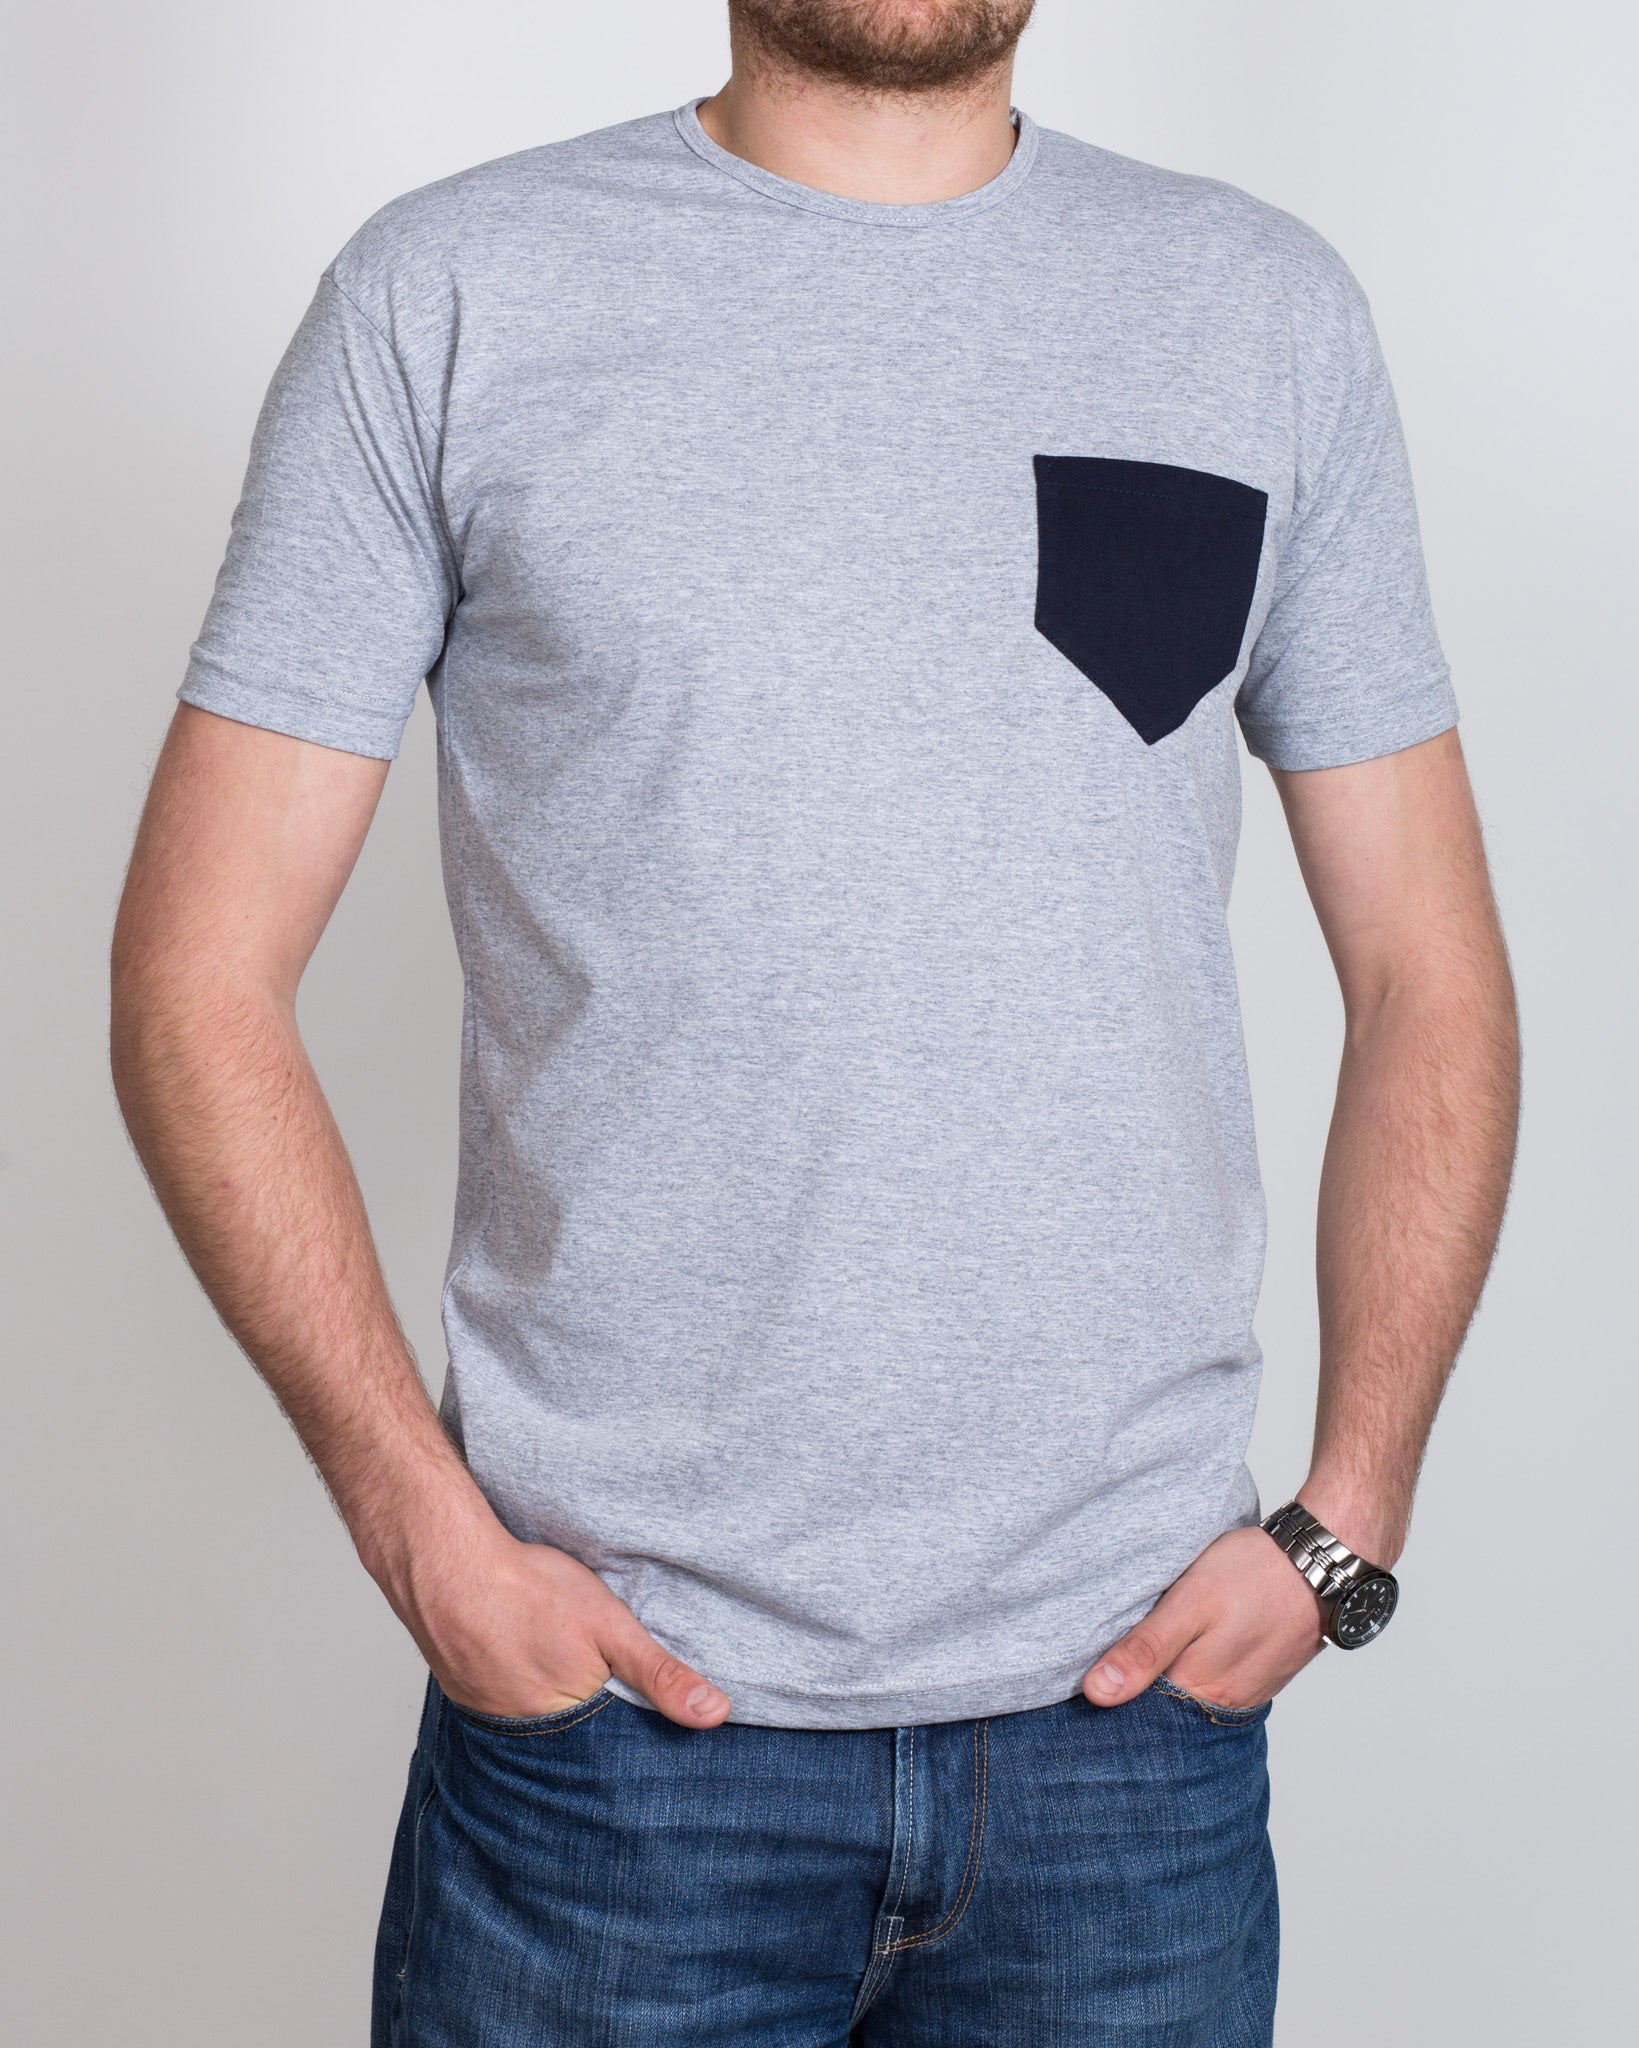 2t Pocket Tall T-Shirt (heather grey)